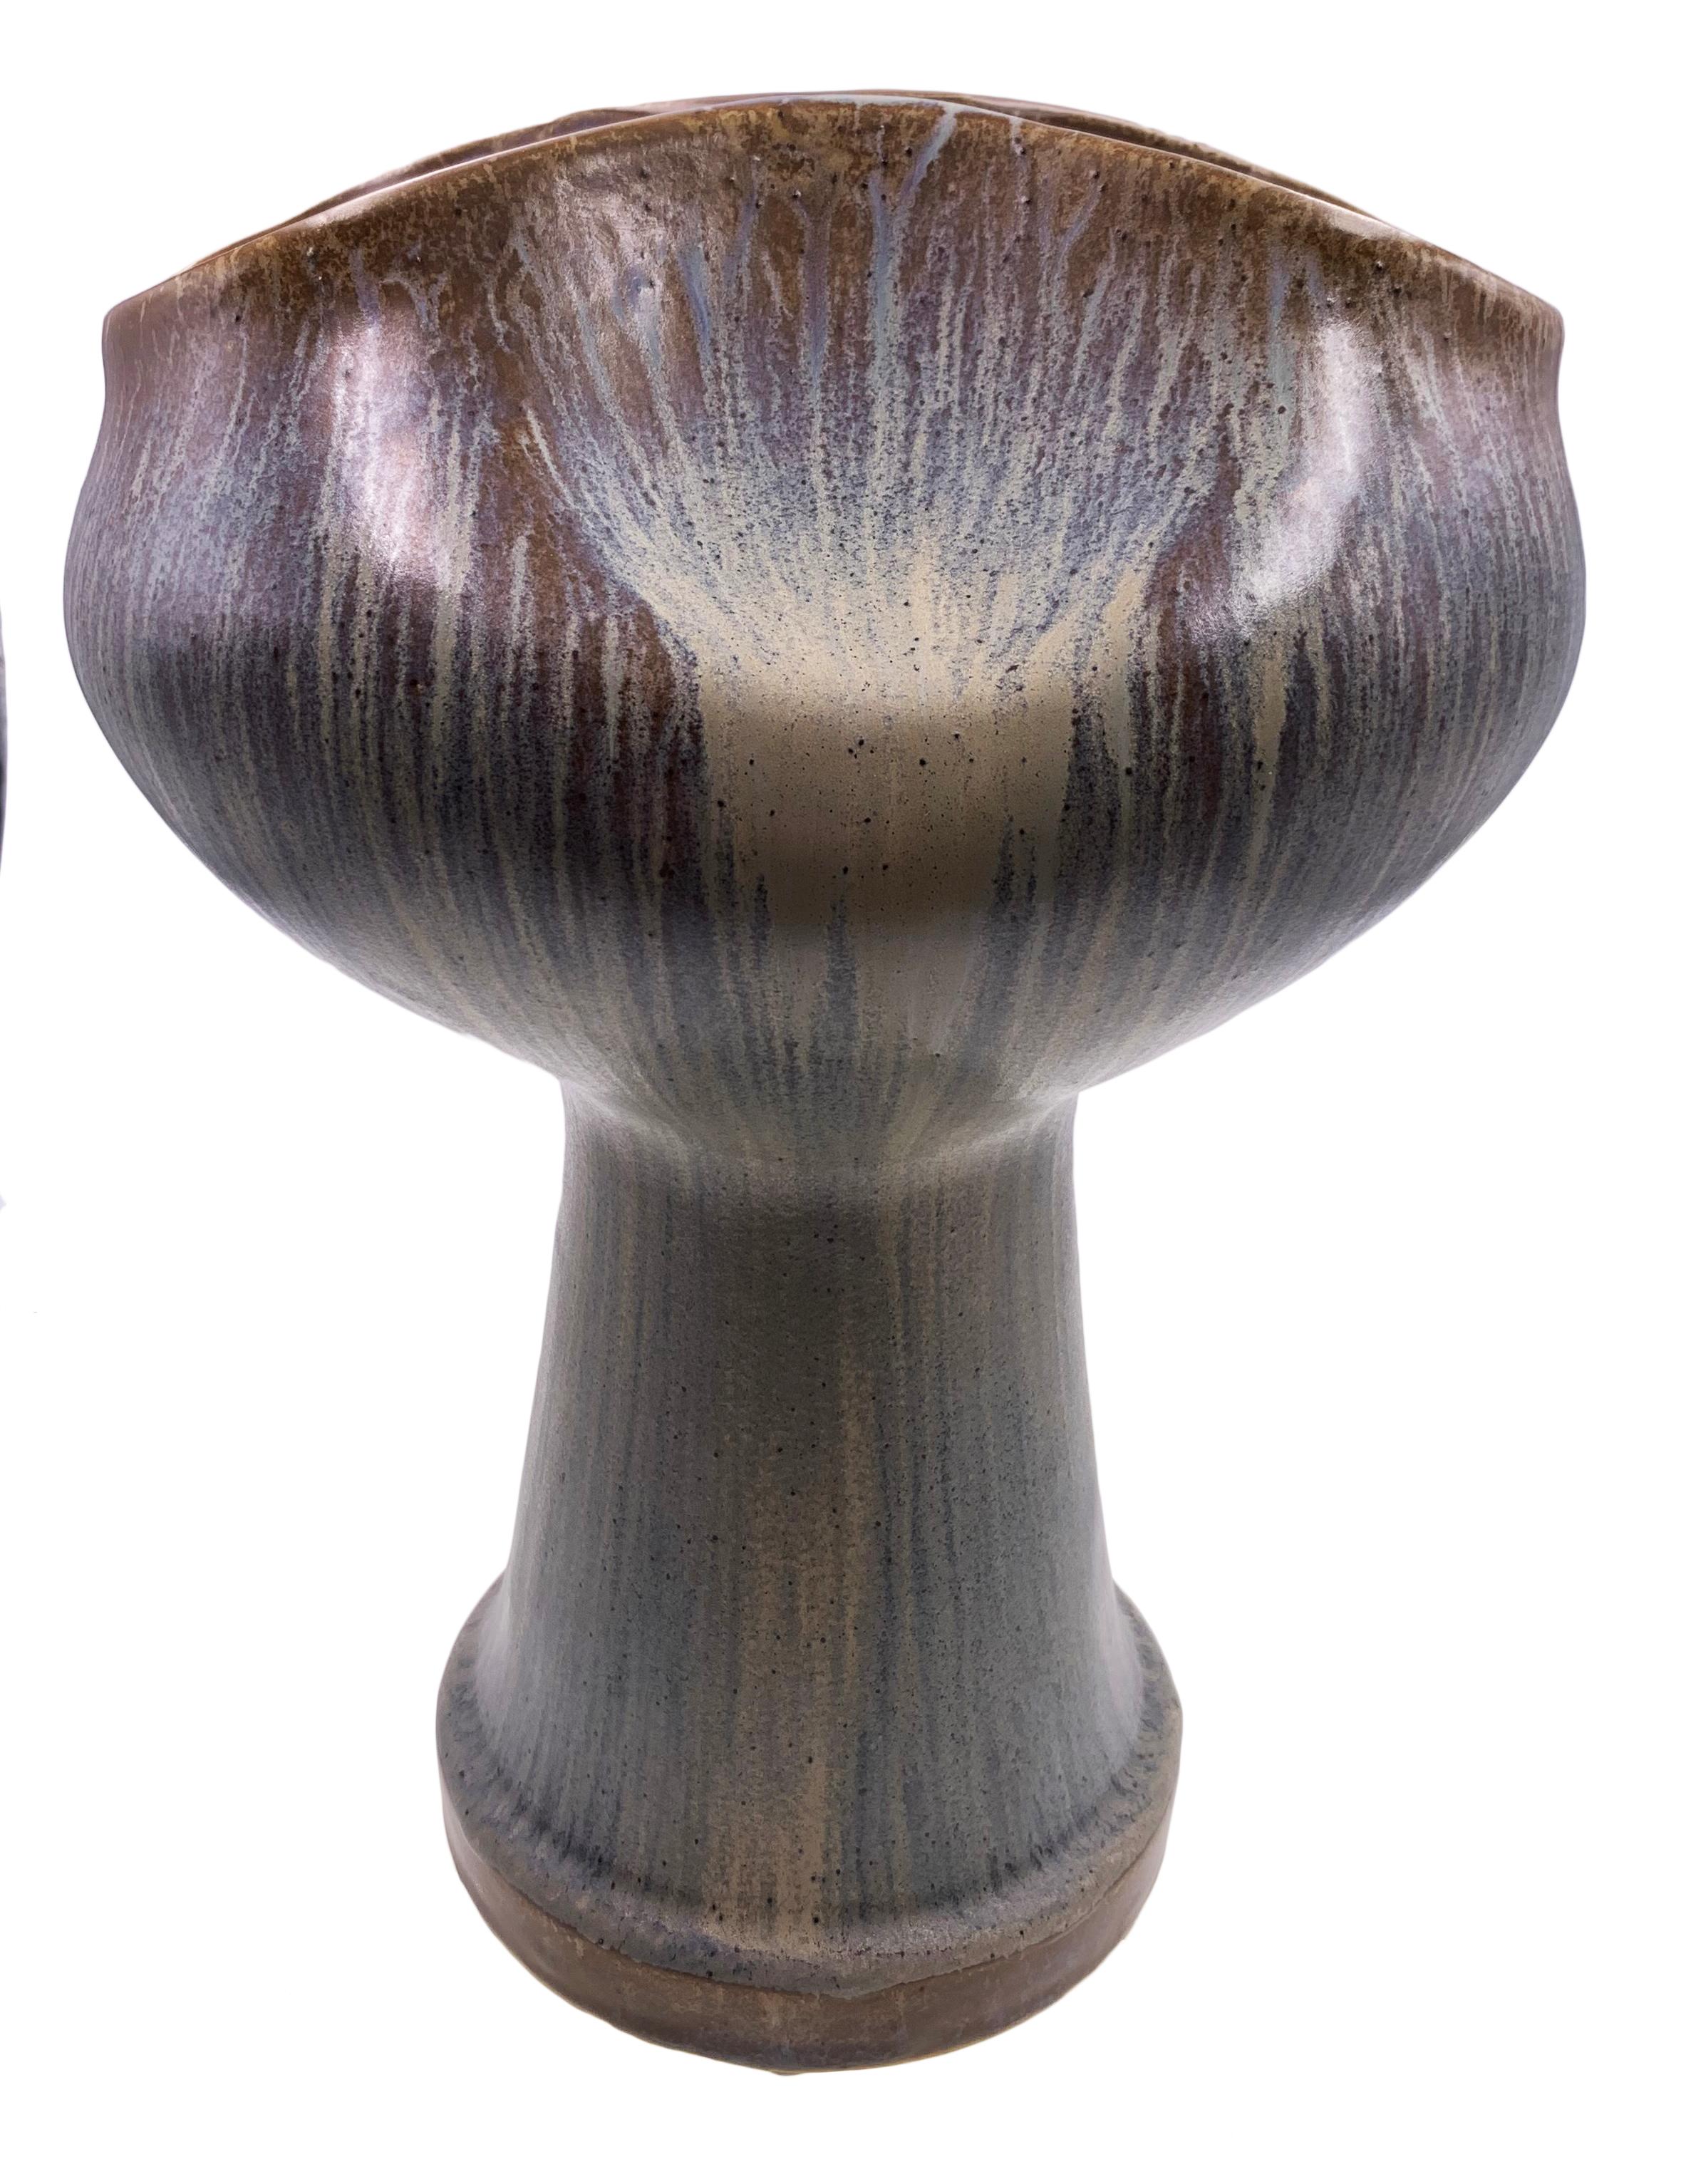 Description : Vase en céramique - The Bulb
Taille : 19 x 15 x 26,5H cm
Matériau : Céramique
Collection : Rythme du milieu du siècle
Remarque : Chaque vase est fabriqué à la main, les nuances de couleur peuvent donc varier d'un vase à l'autre